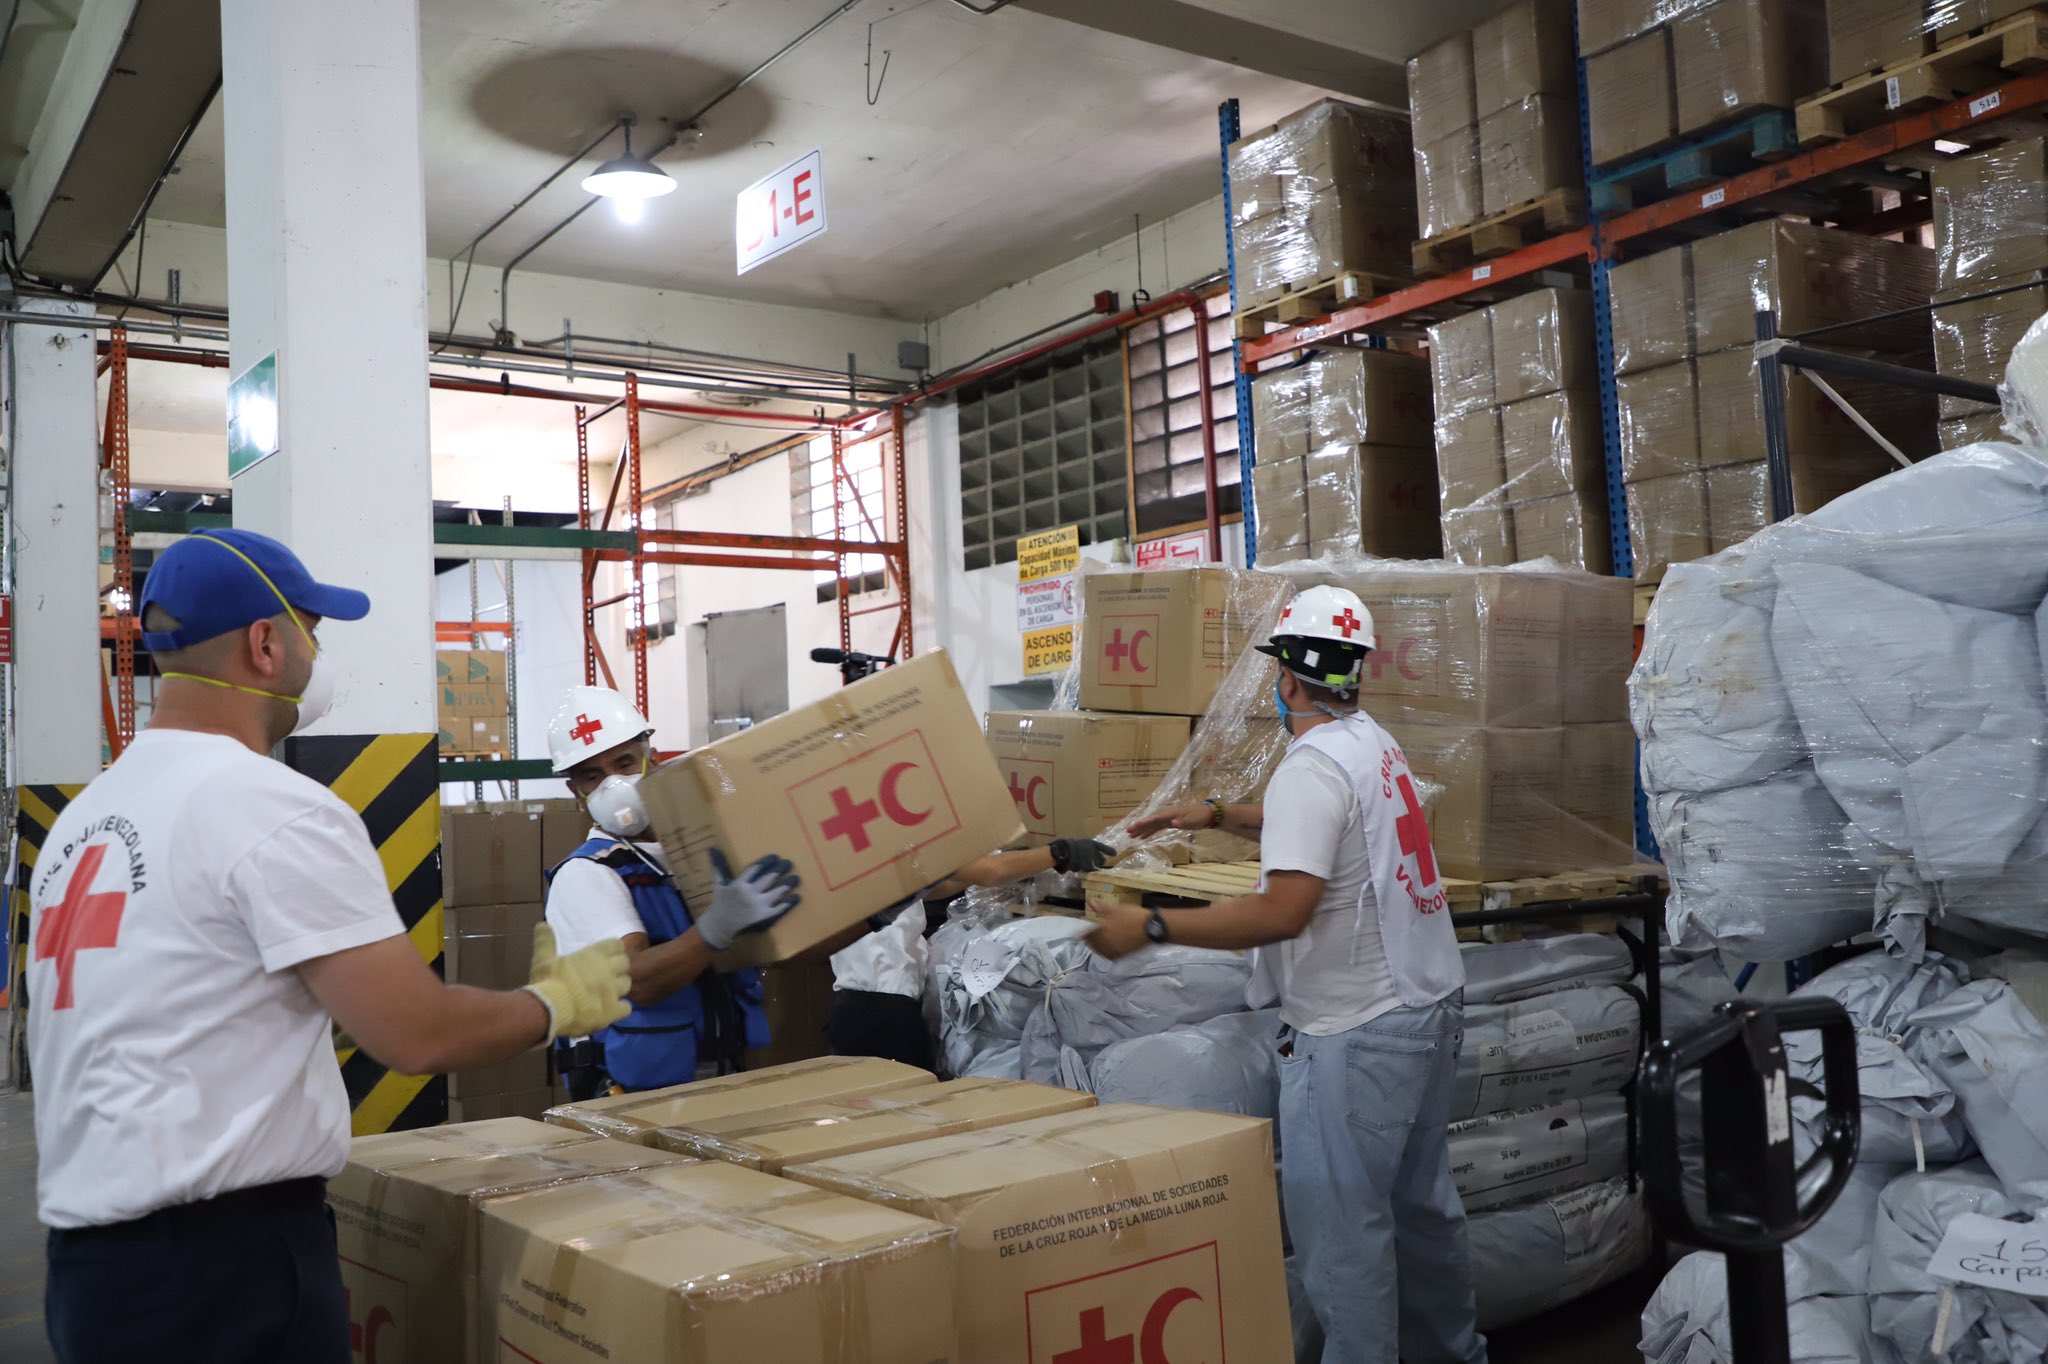 Cruz Roja ayuda humanitaria - noticias ahora